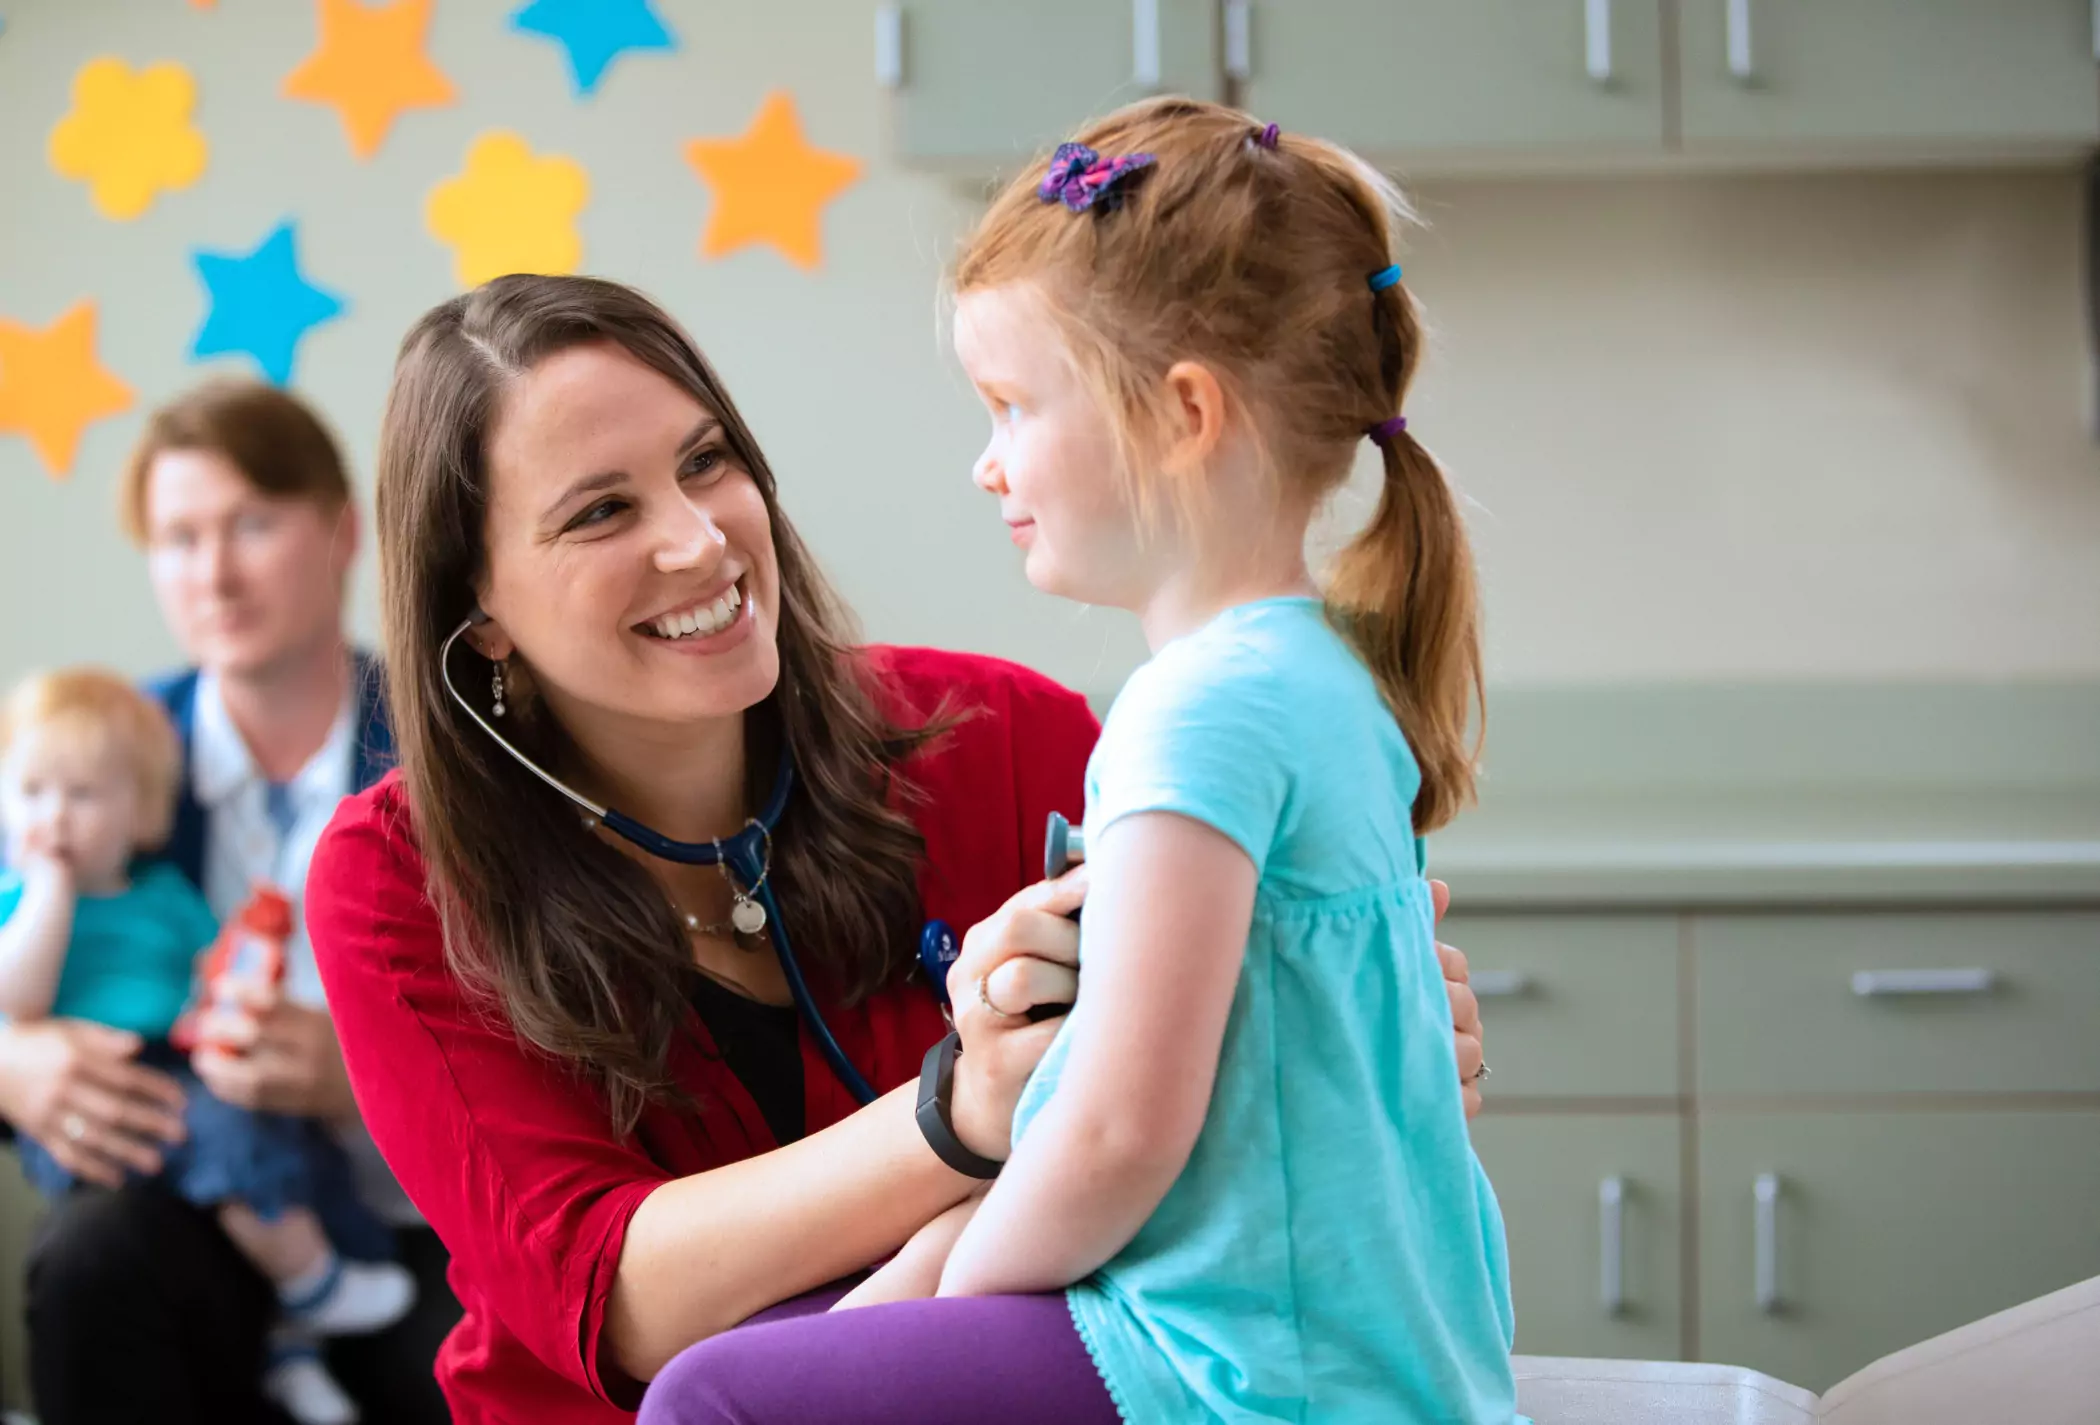 Children's Minnesota - Find a pediatric health care provider or location